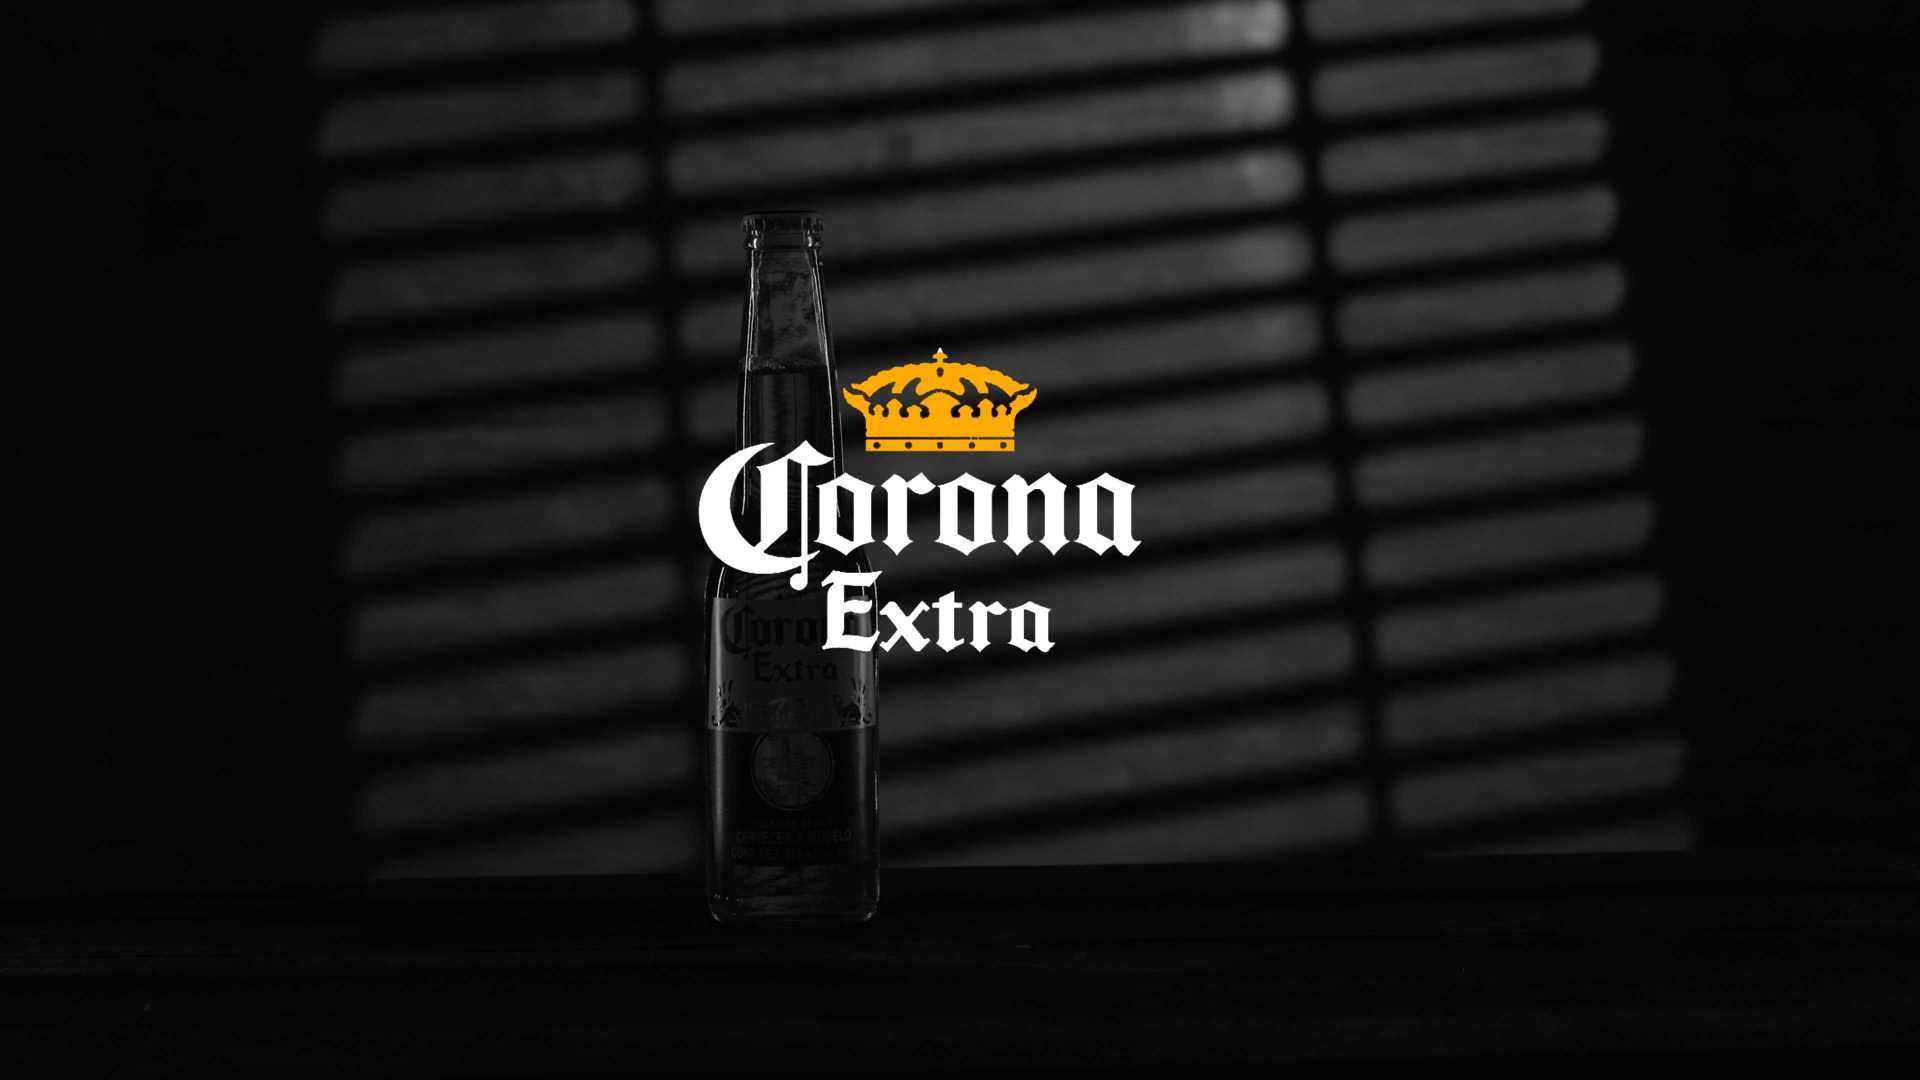 【成片】科罗娜啤酒创意小广告《单身狗狂想曲》